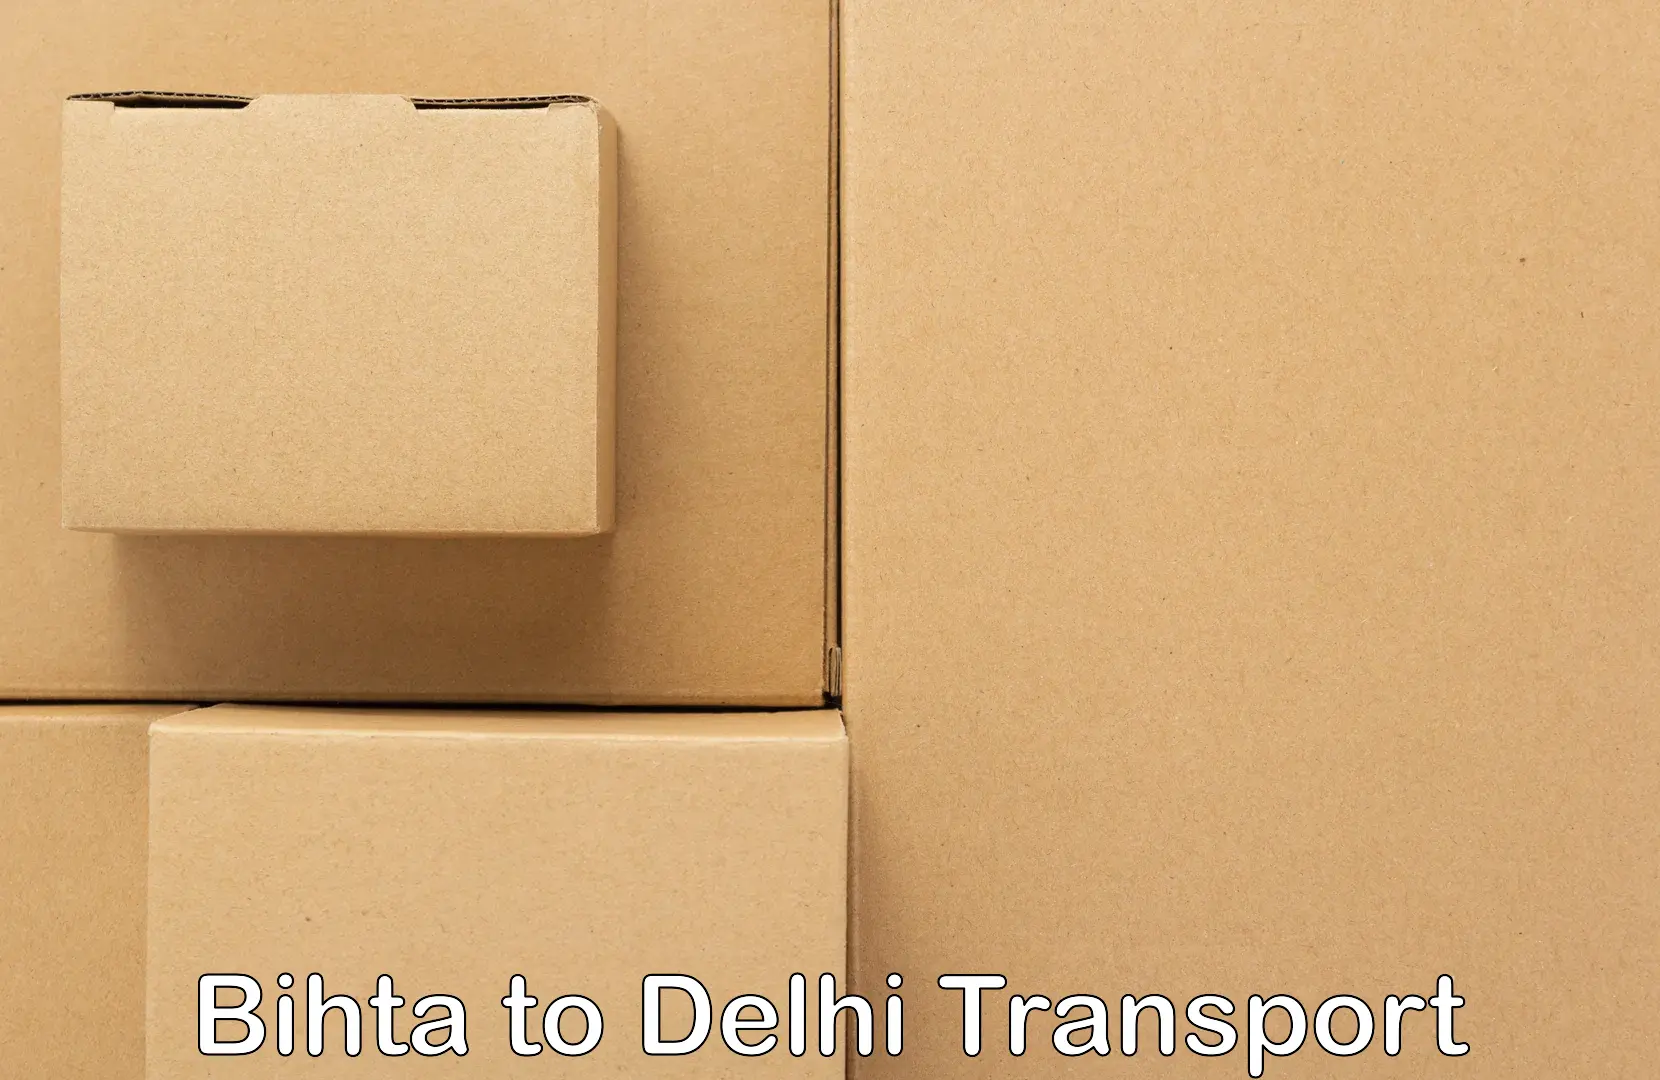 Container transport service Bihta to Sarojini Nagar